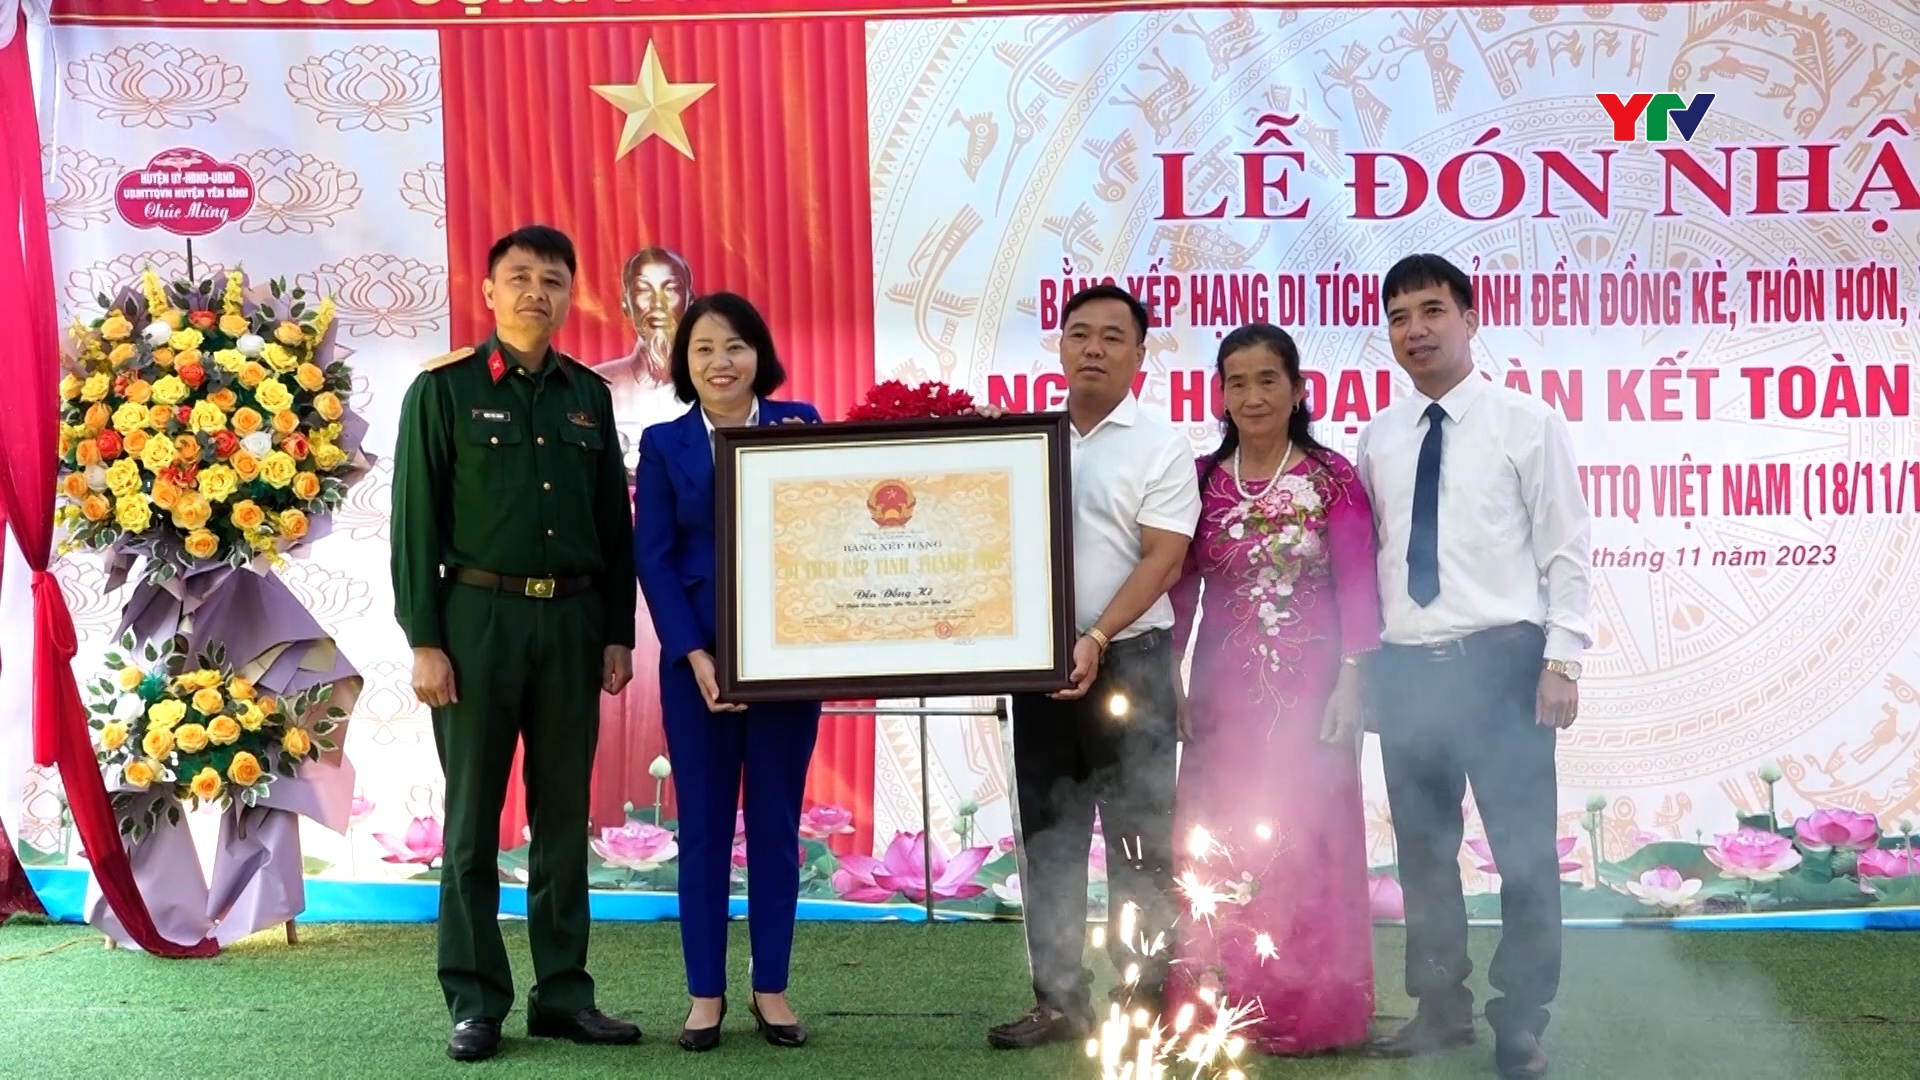 Xã Thịnh Hưng, huyện Yên Bình đón nhận Bằng xếp hạng di tích cấp tỉnh Đền Đồng Kè